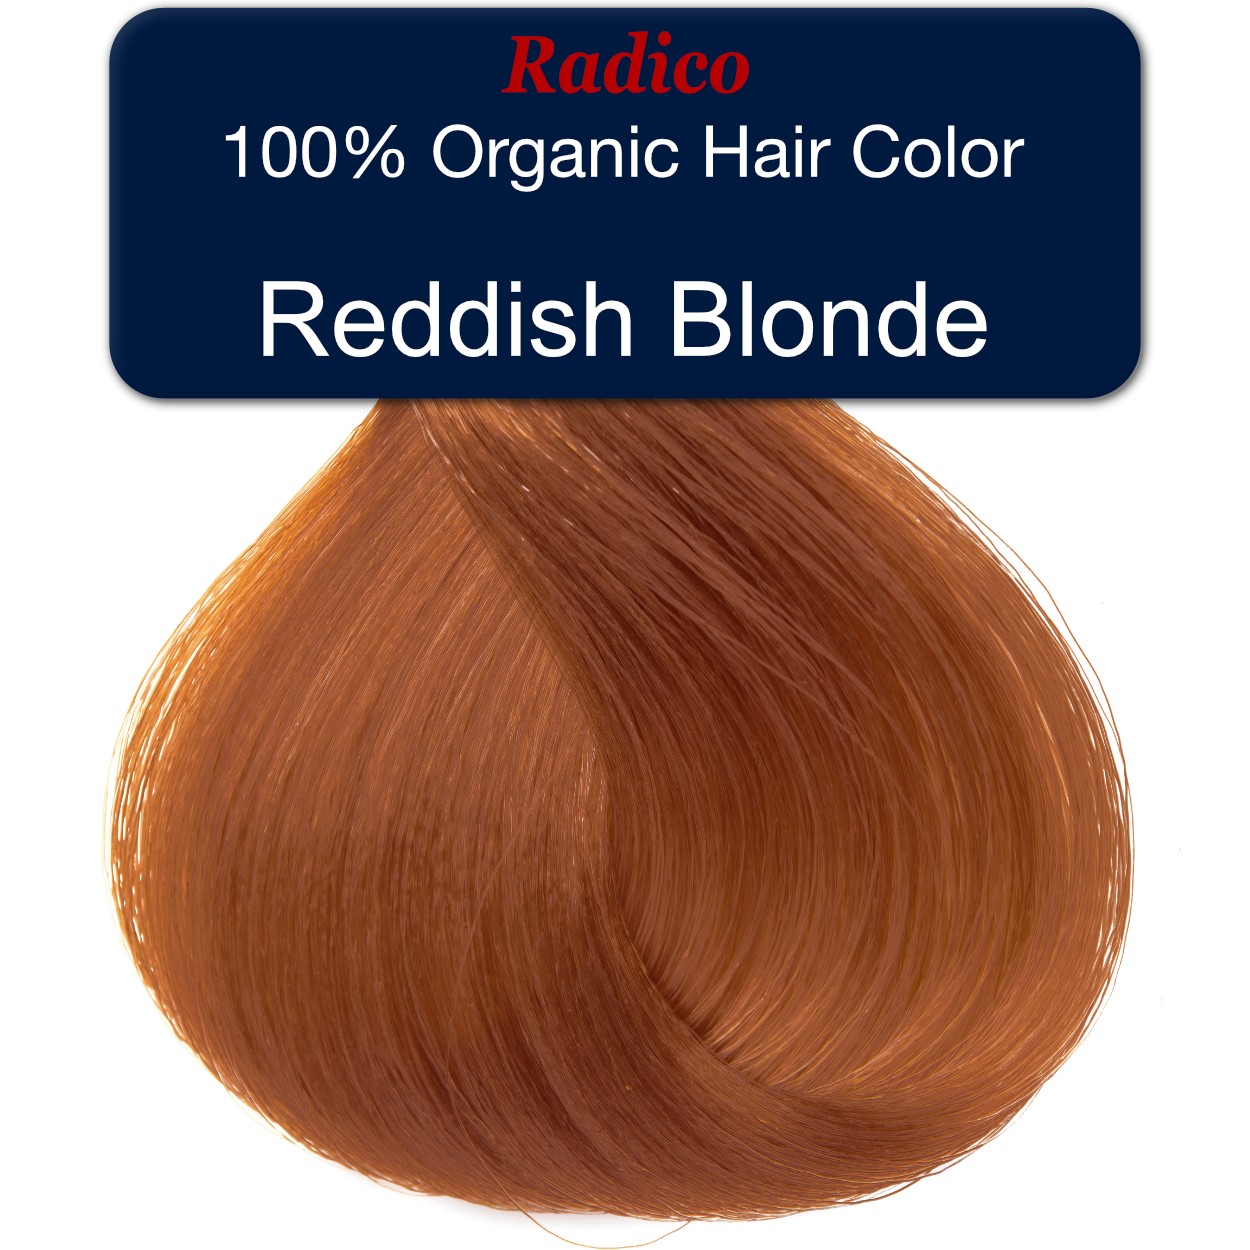 100% organic hair color. Reddish blonde hair color sample.